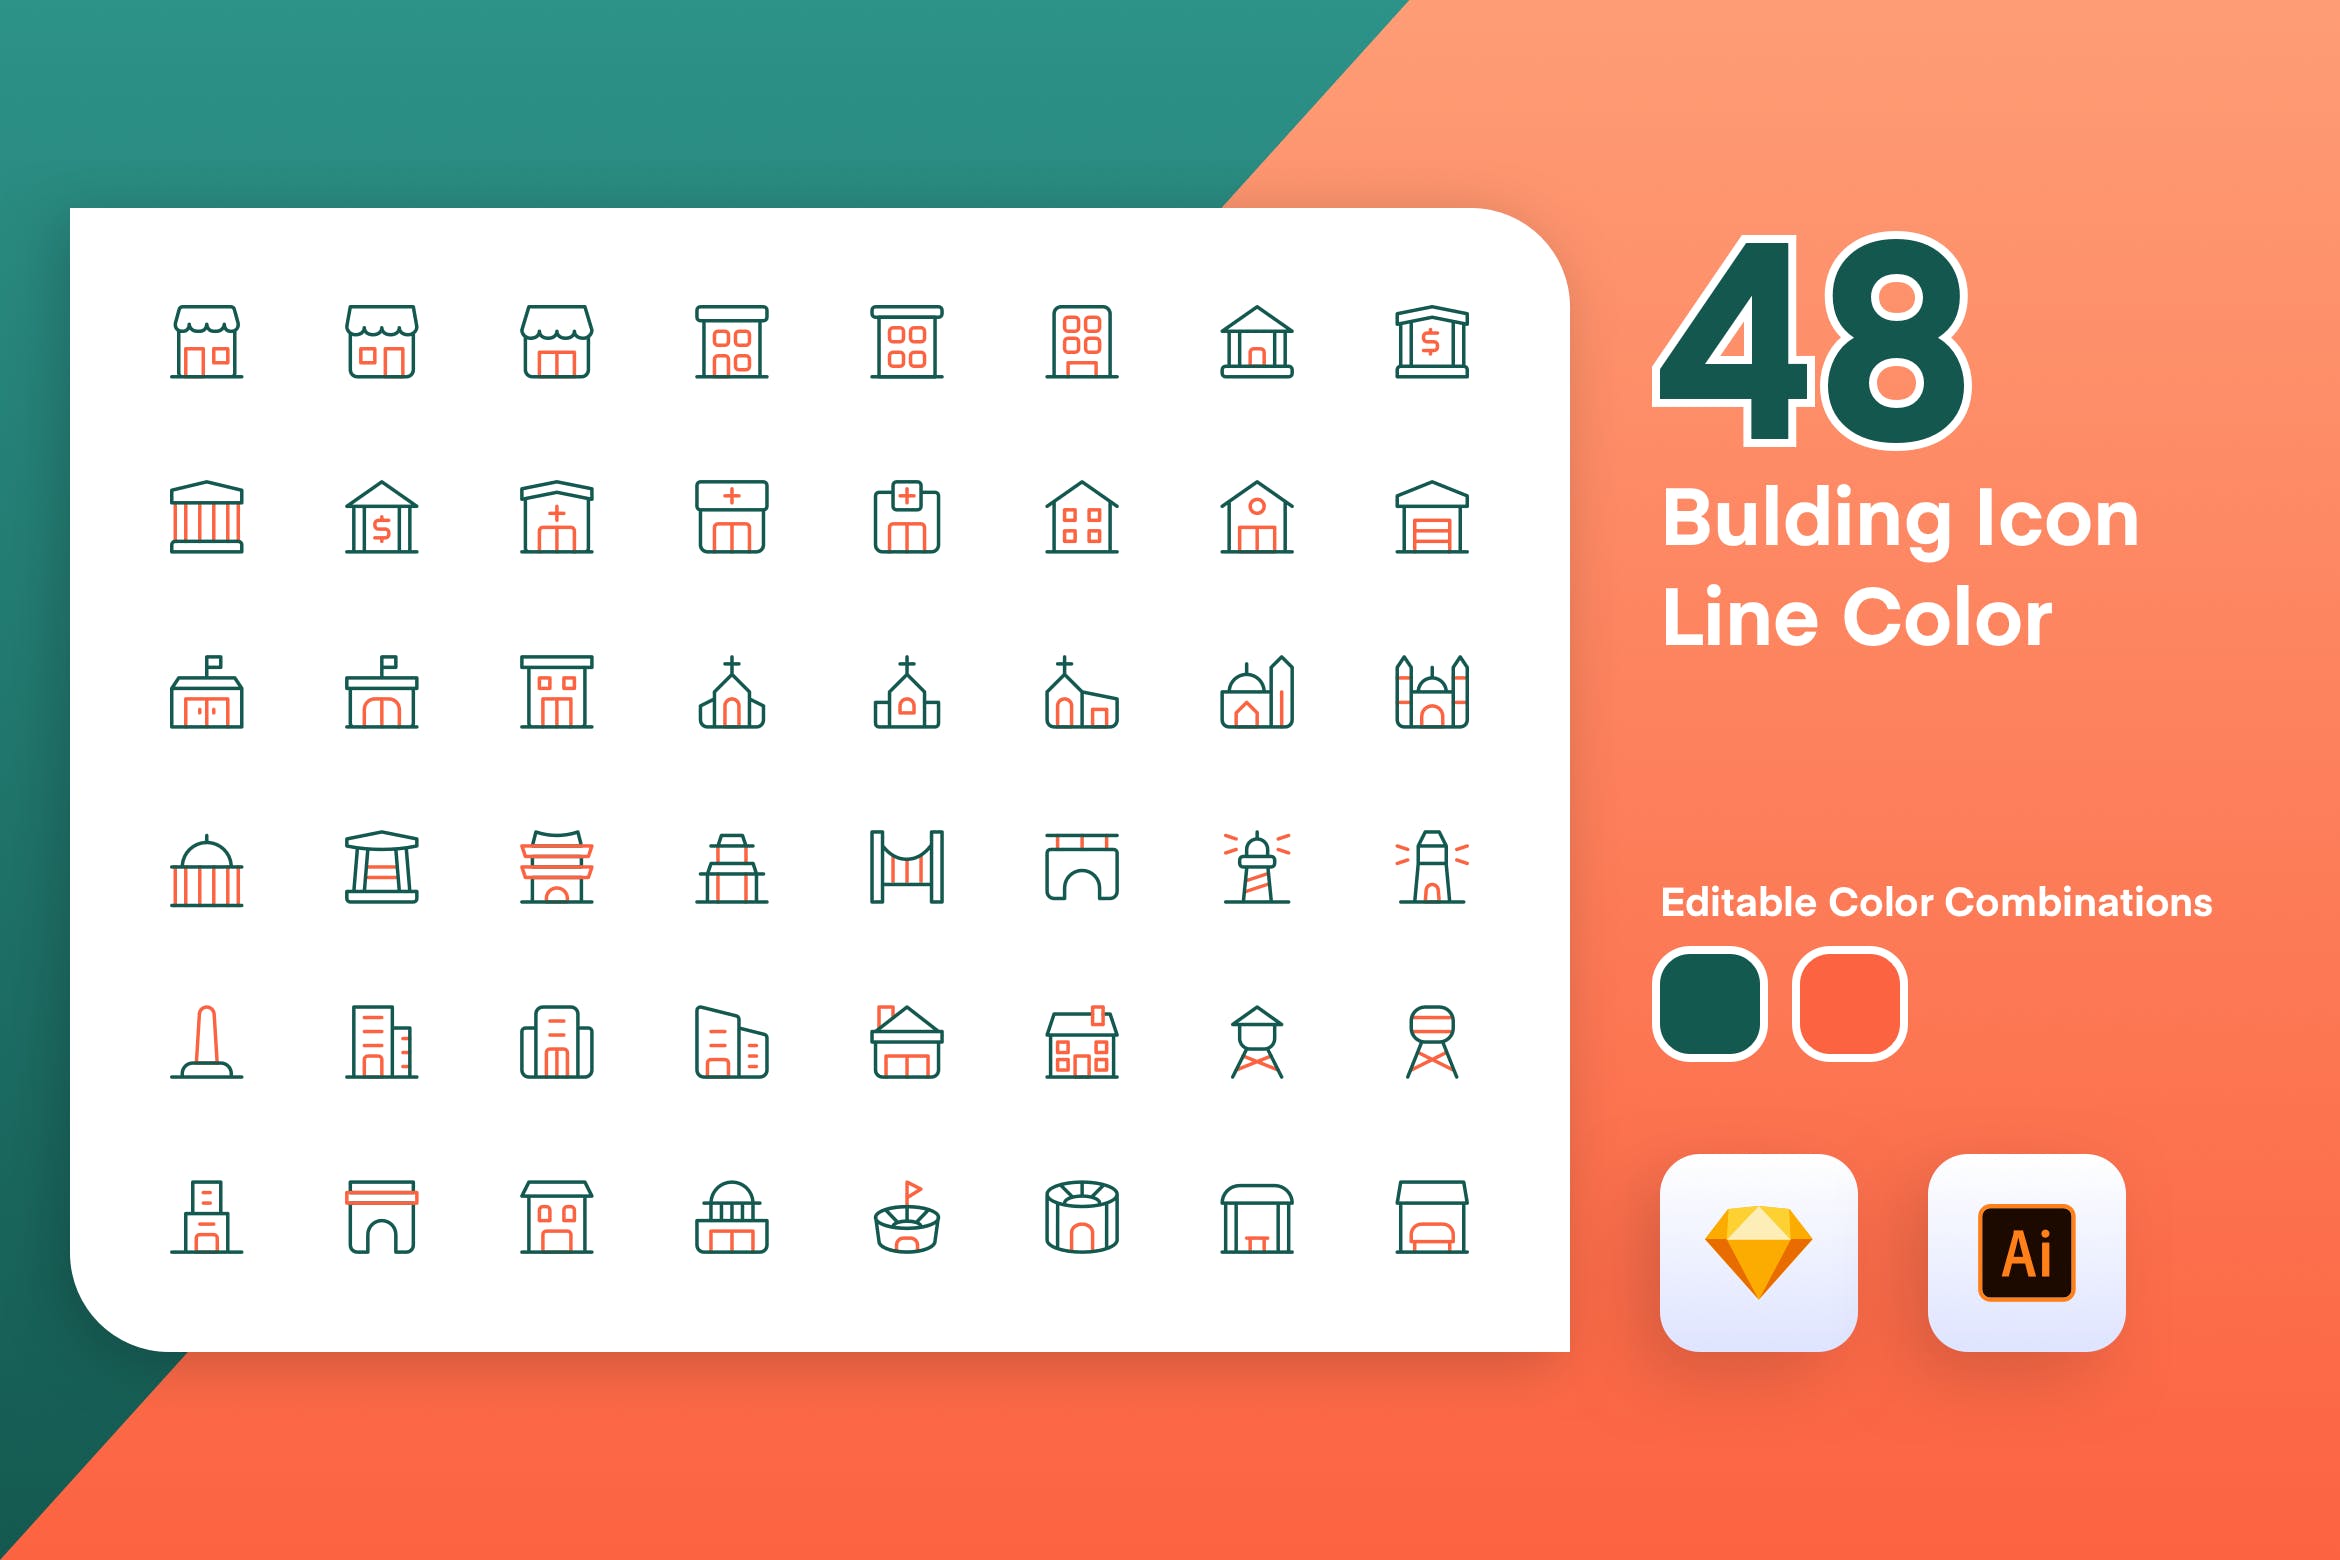 48枚建筑主题彩色矢量线性非凡图库精选图标素材 Building Icon Line Color插图